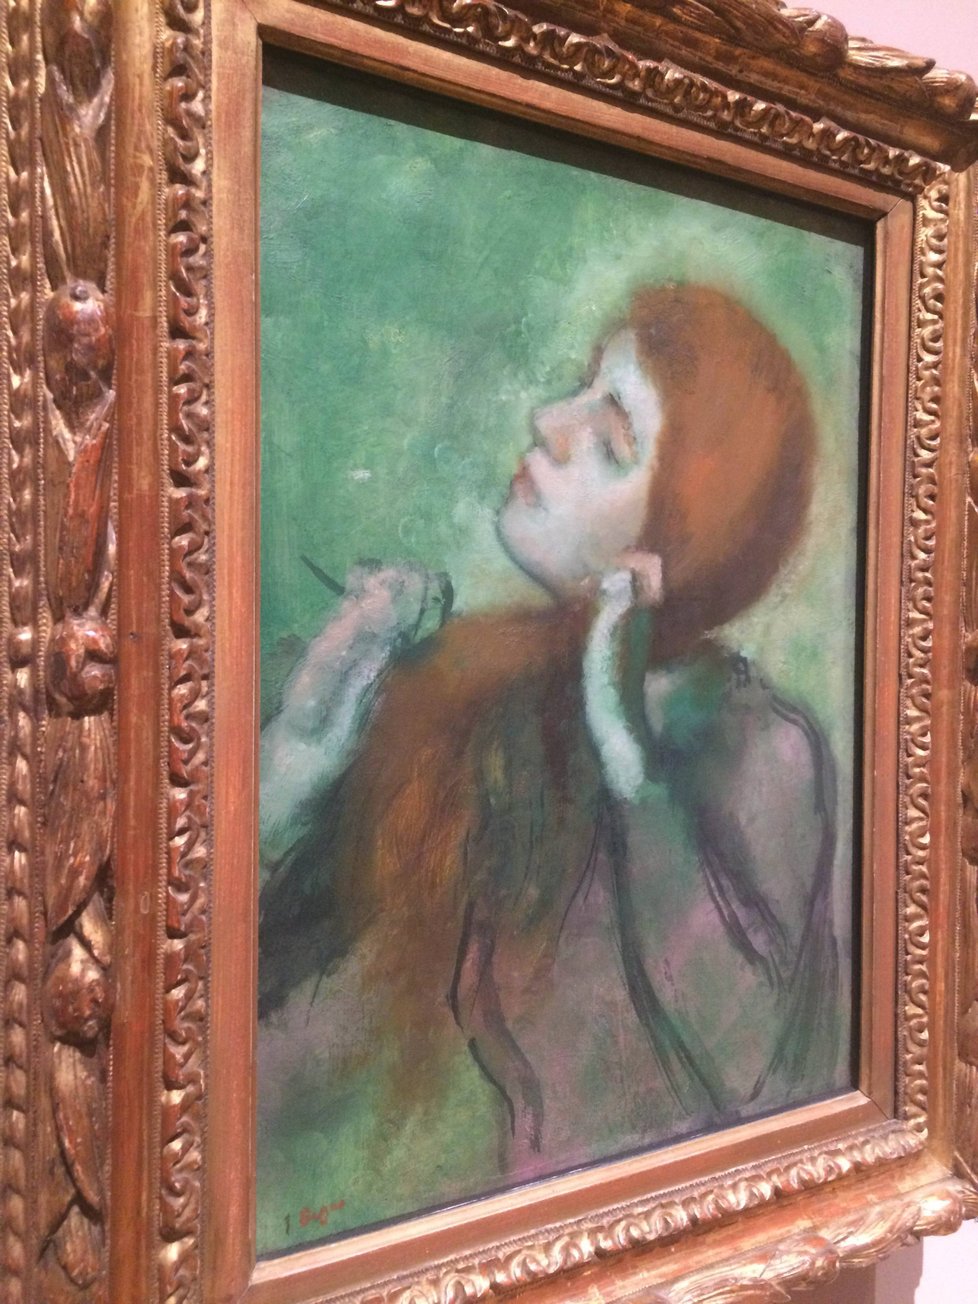 Svérázný malíř Edgar Degas se svým pojetím malby vymykal od ostatních.